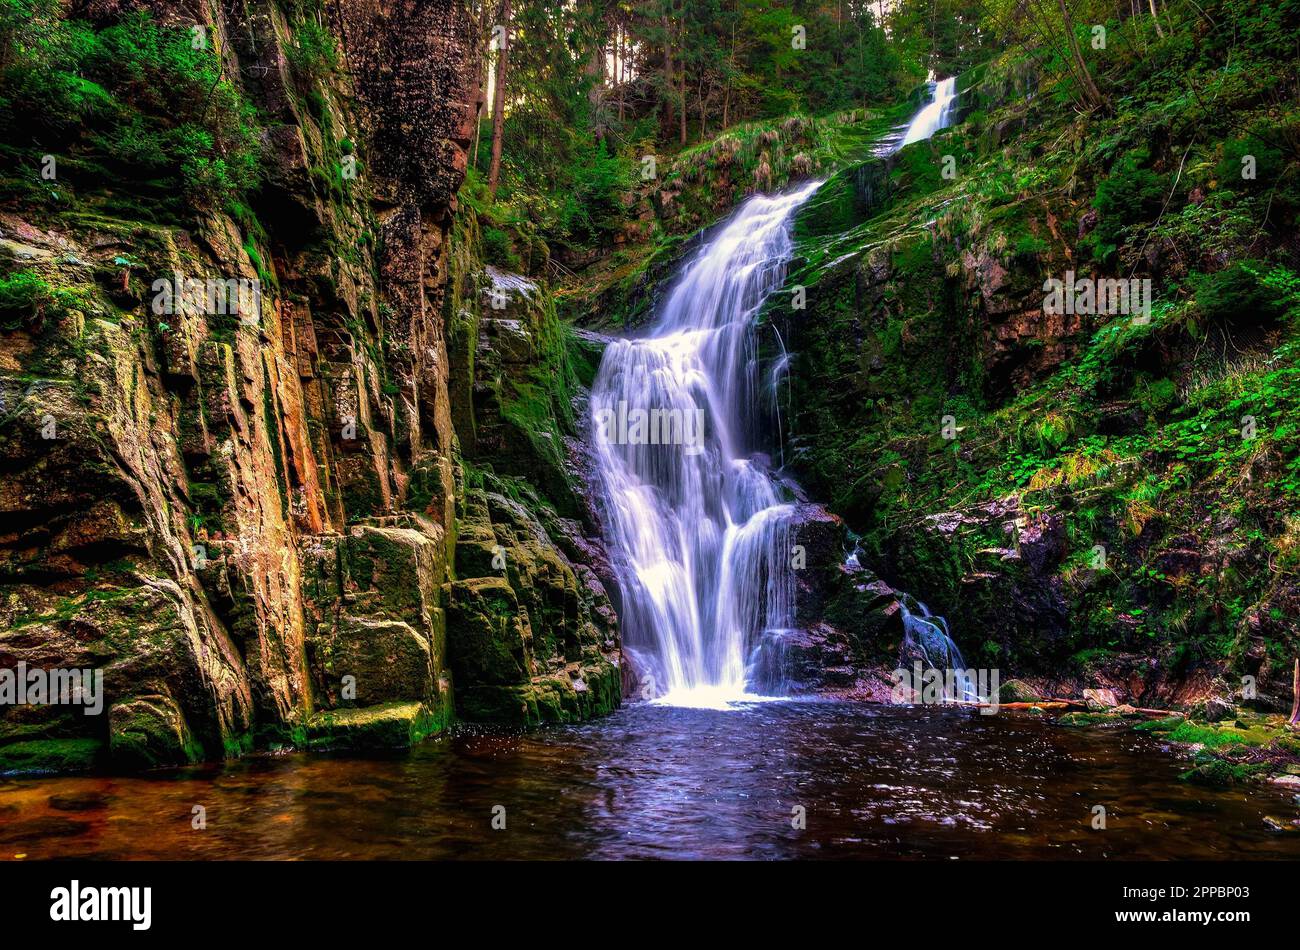 Bezaubernder Wasserfall in den Bergen zwischen Felsen und grünen Pflanzen. Der berühmte Kamienczyk-Wasserfall im Karkonosze-Nationalpark, Polen. Stockfoto